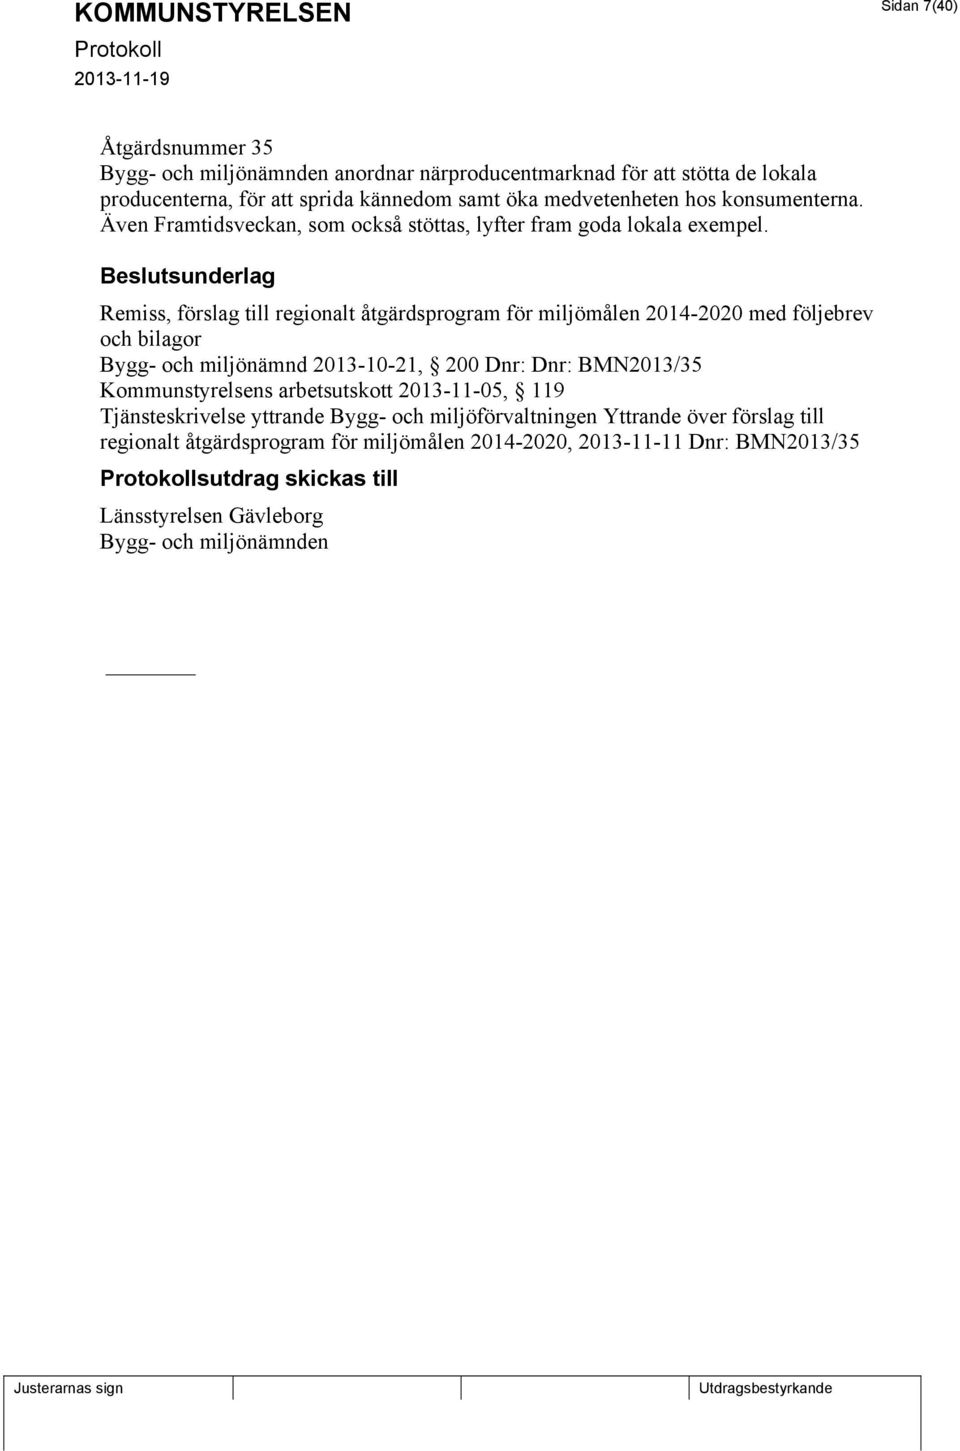 sunderlag Remiss, förslag till regionalt åtgärdsprogram för miljömålen 2014-2020 med följebrev och bilagor Bygg- och miljönämnd 2013-10-21, 200 Dnr: Dnr: BMN2013/35